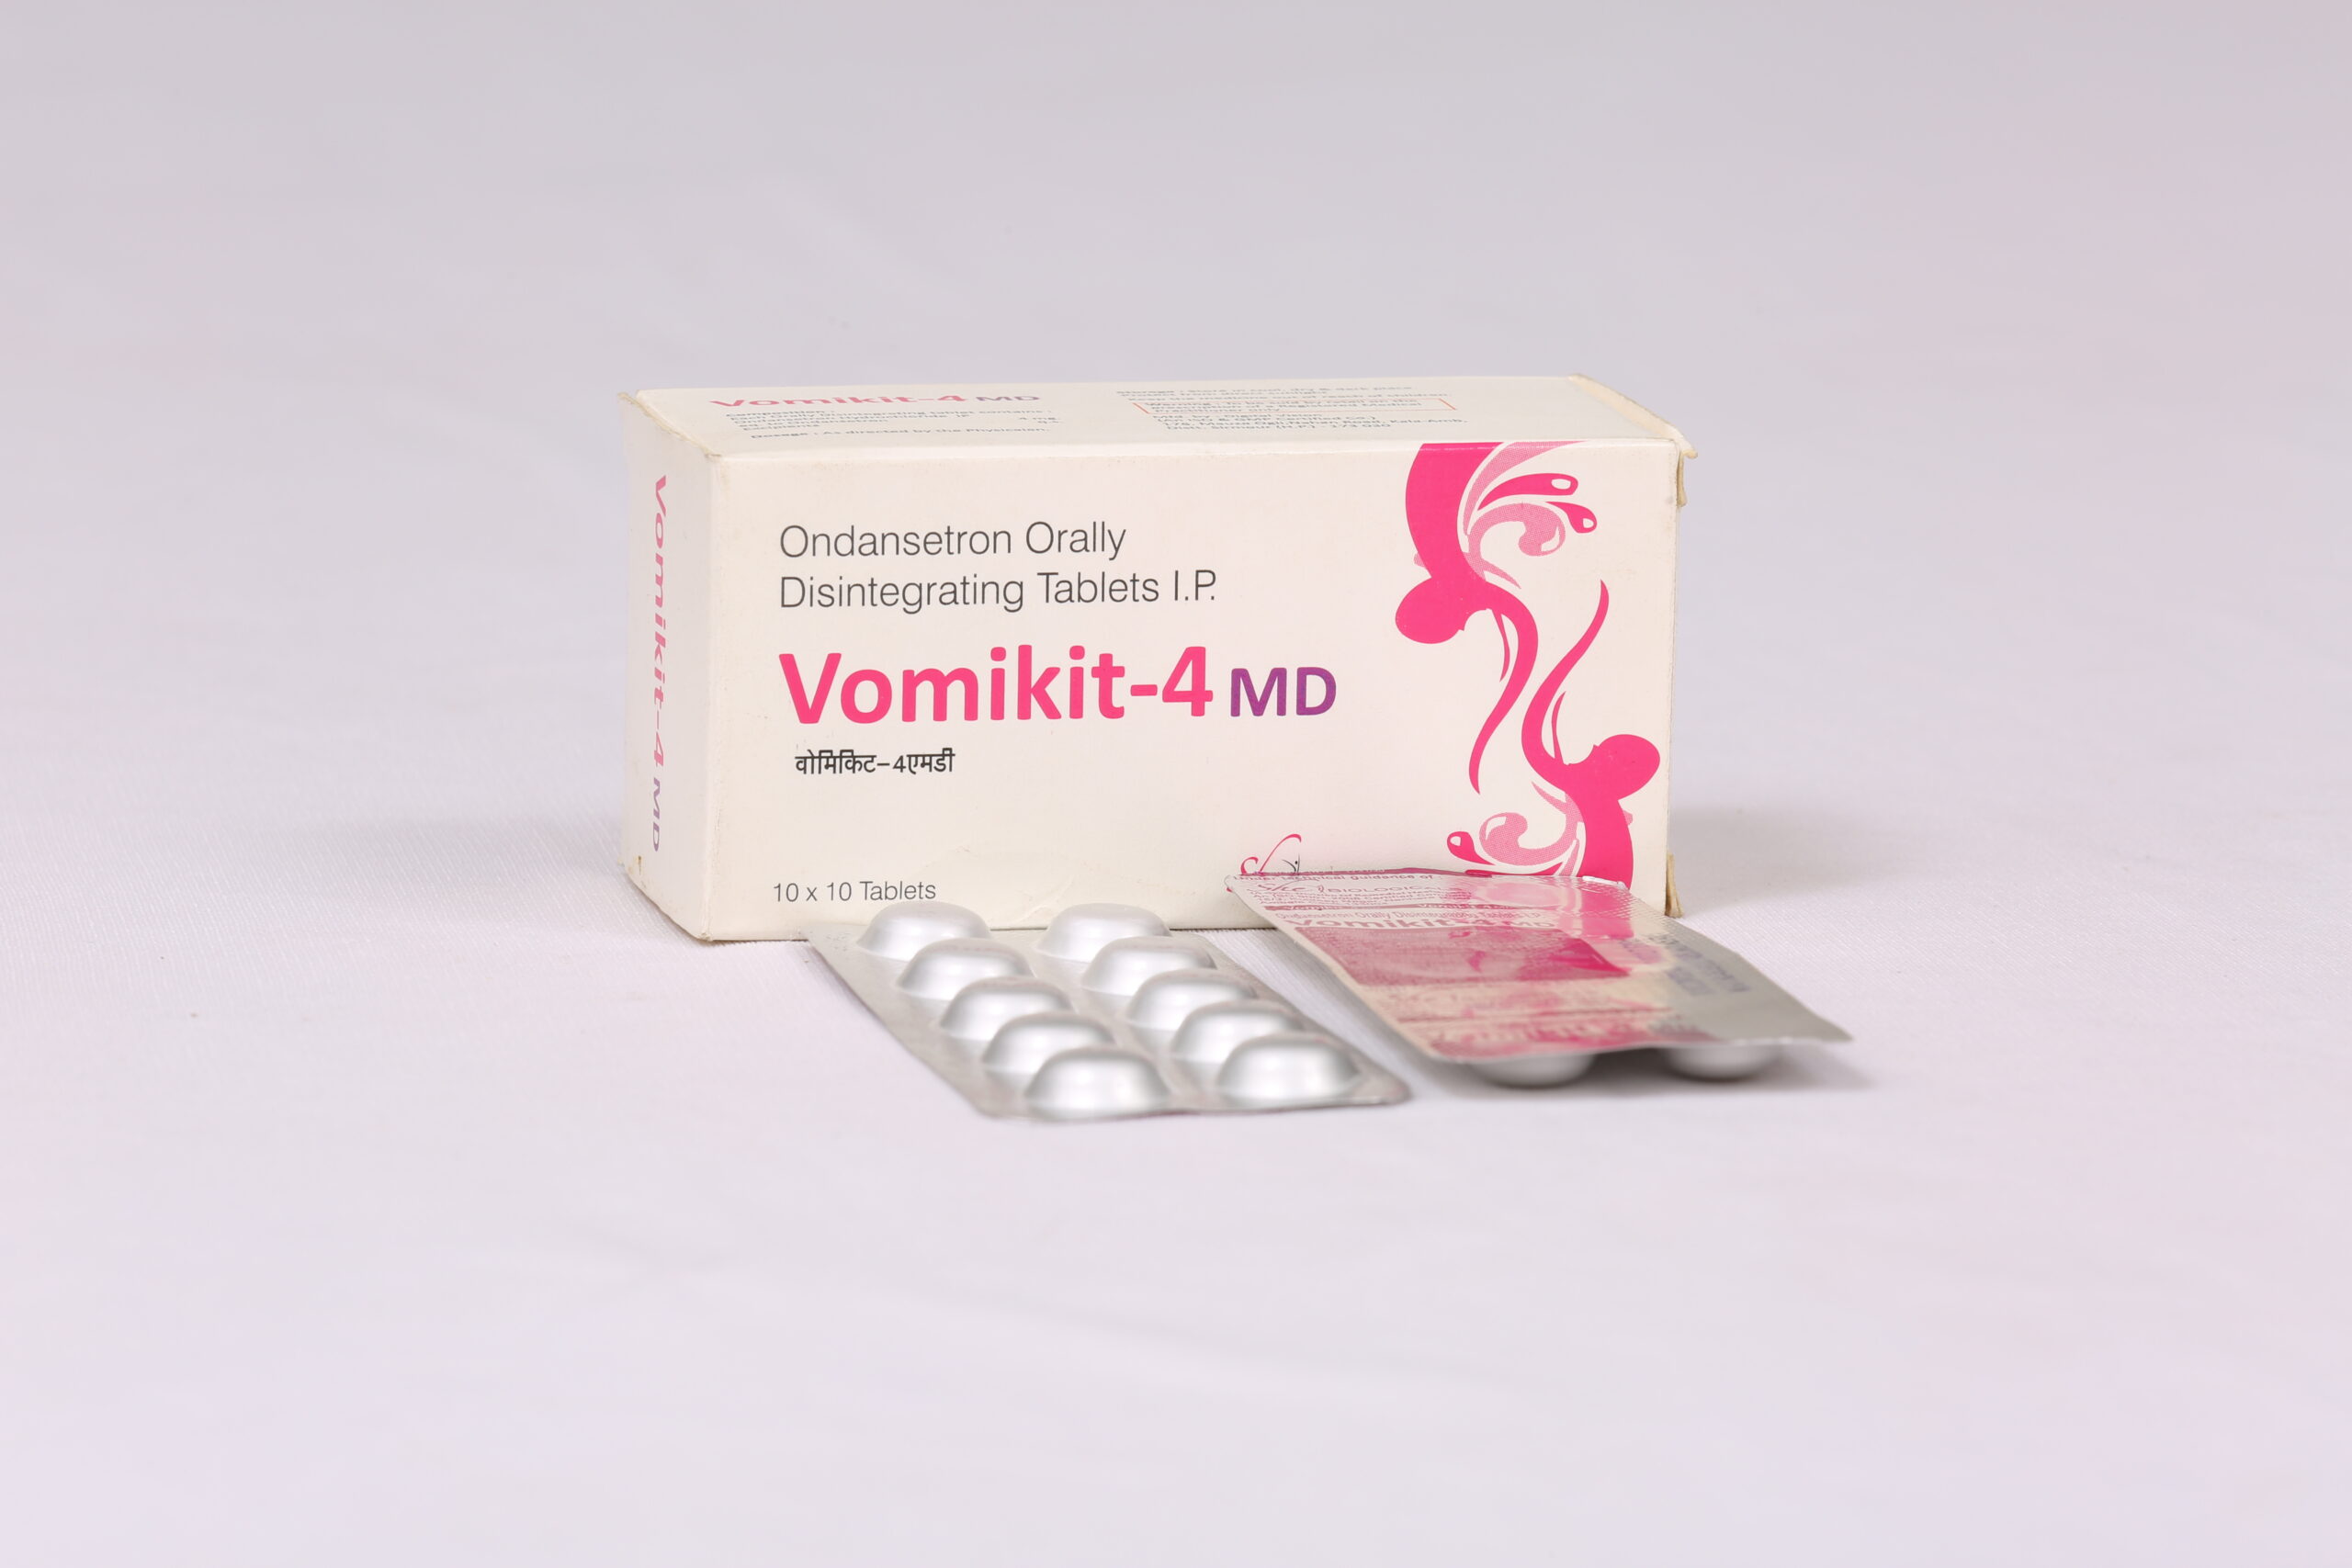 VOMIKIT-4 MD (Ondansetron 4mg)